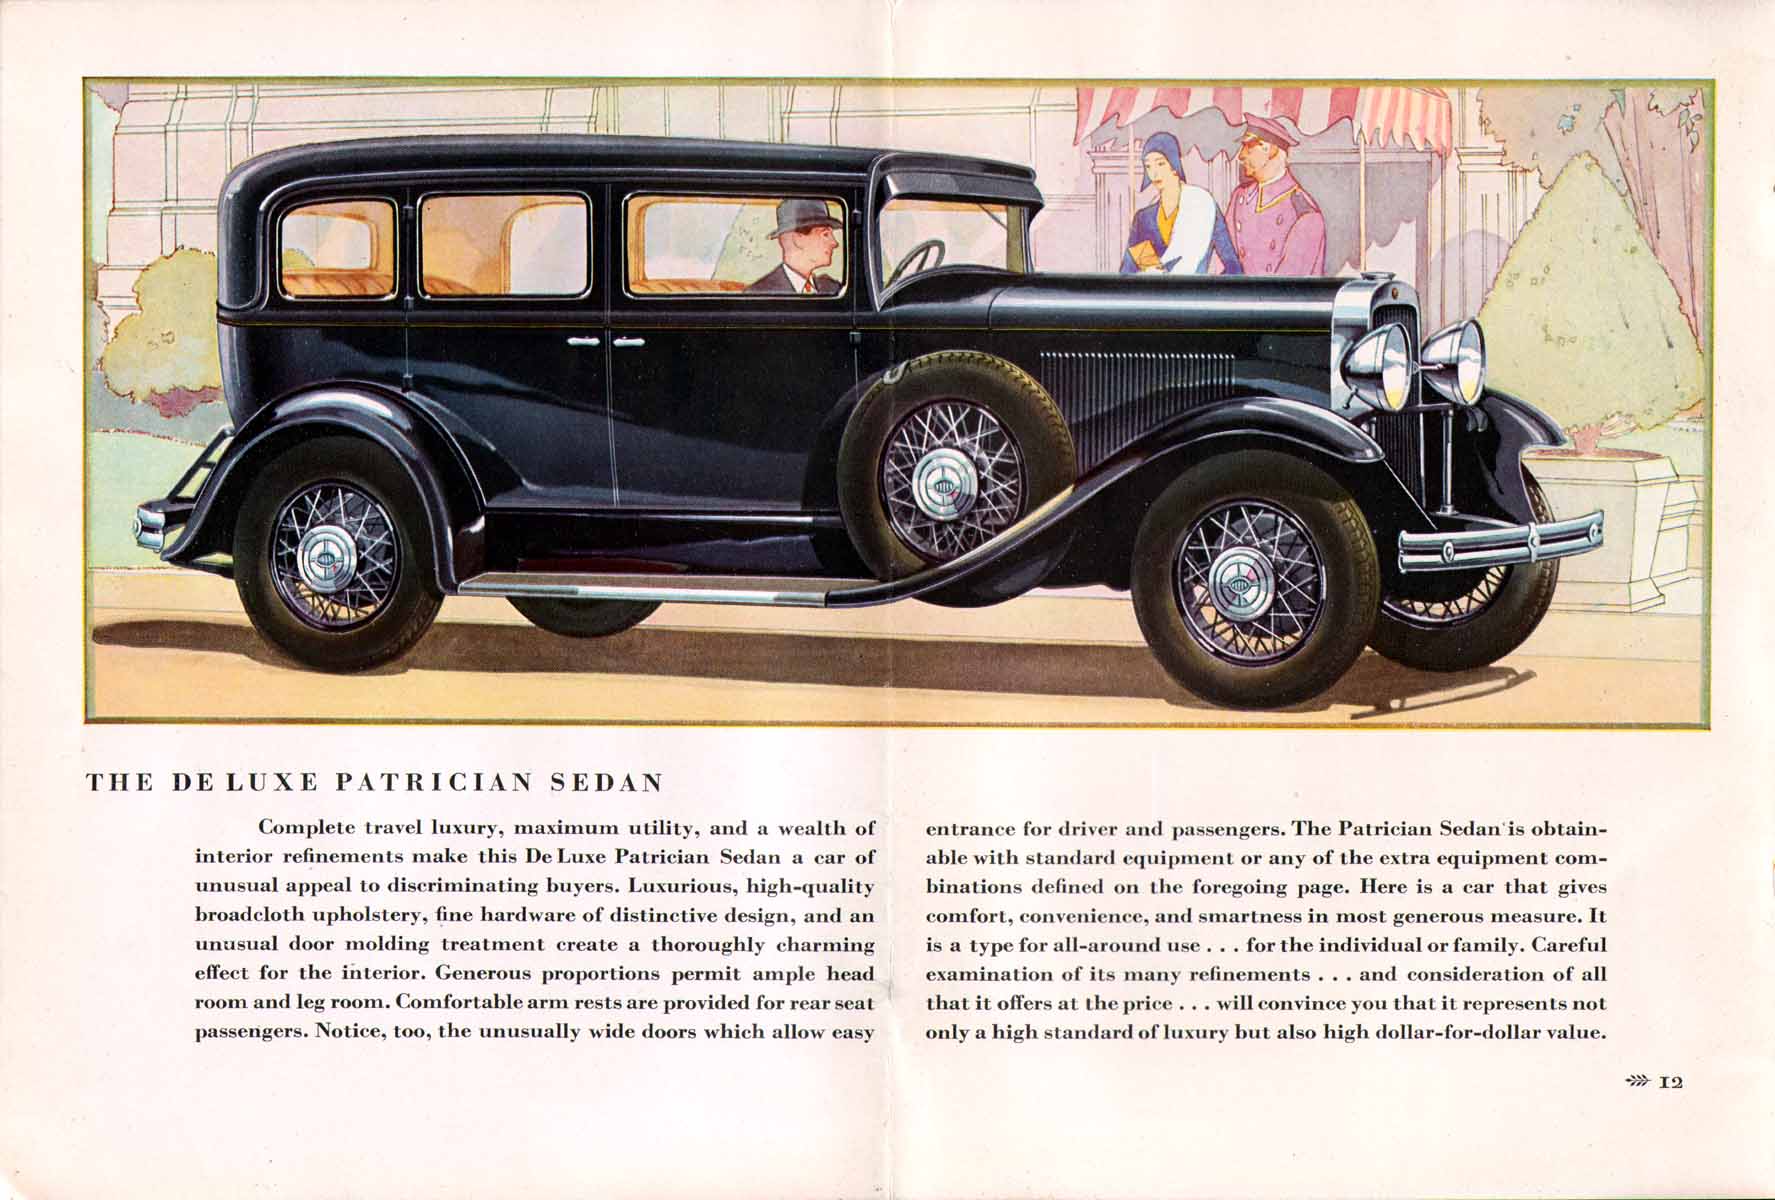 1930_Oldsmobile-12